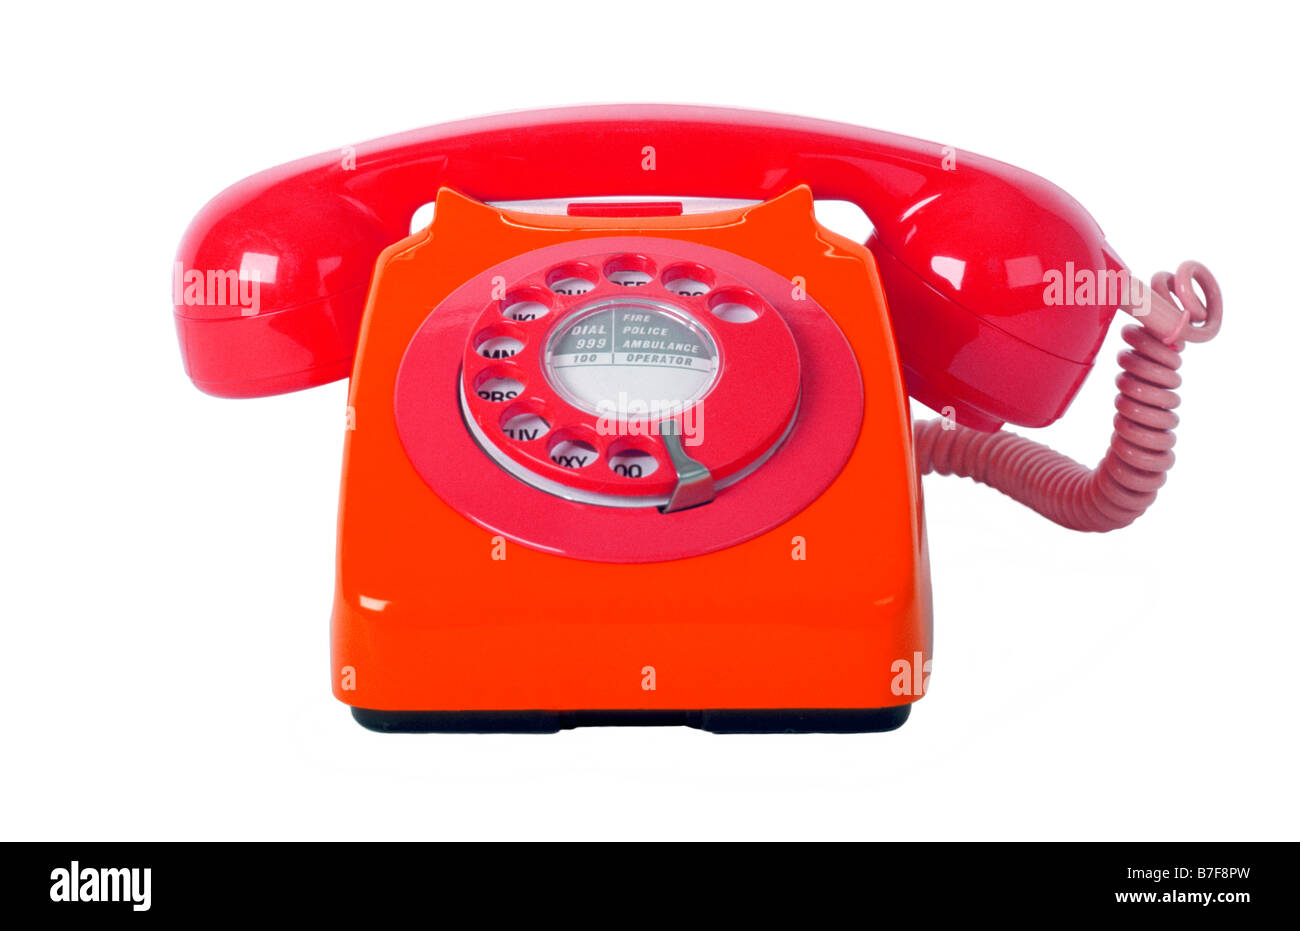 Traditionellen Stil 70er Jahre 746 british Telecom Telefon auf einem reinen weißen Hintergrund. Stockfoto